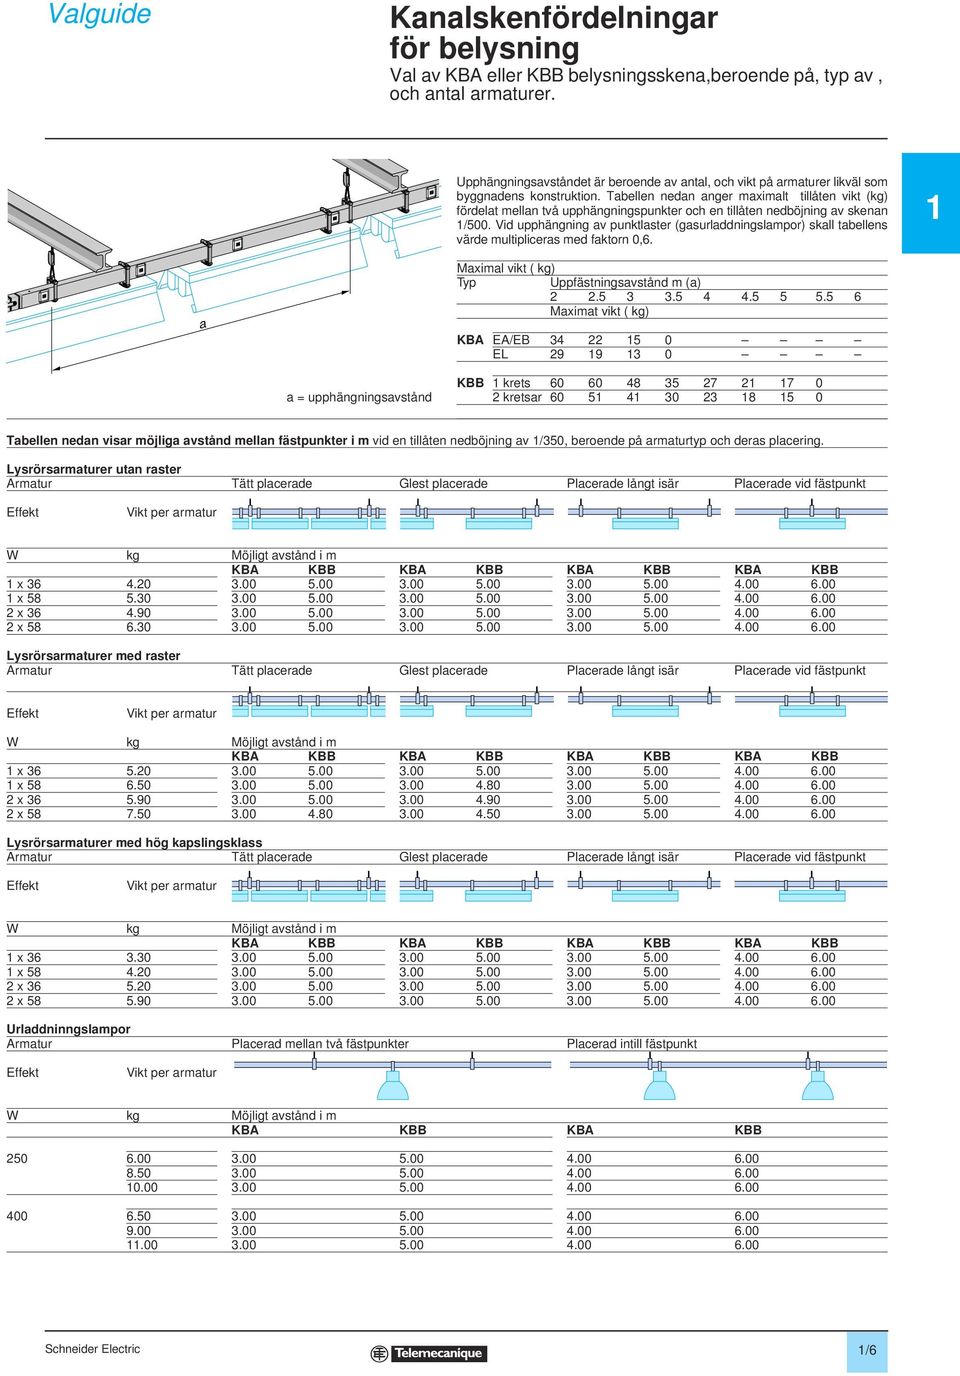 Tabellen nedan anger maximalt tillåten vikt (kg) fördelat mellan två upphängningspunkter och en tillåten nedböjning av skenan 1/500.